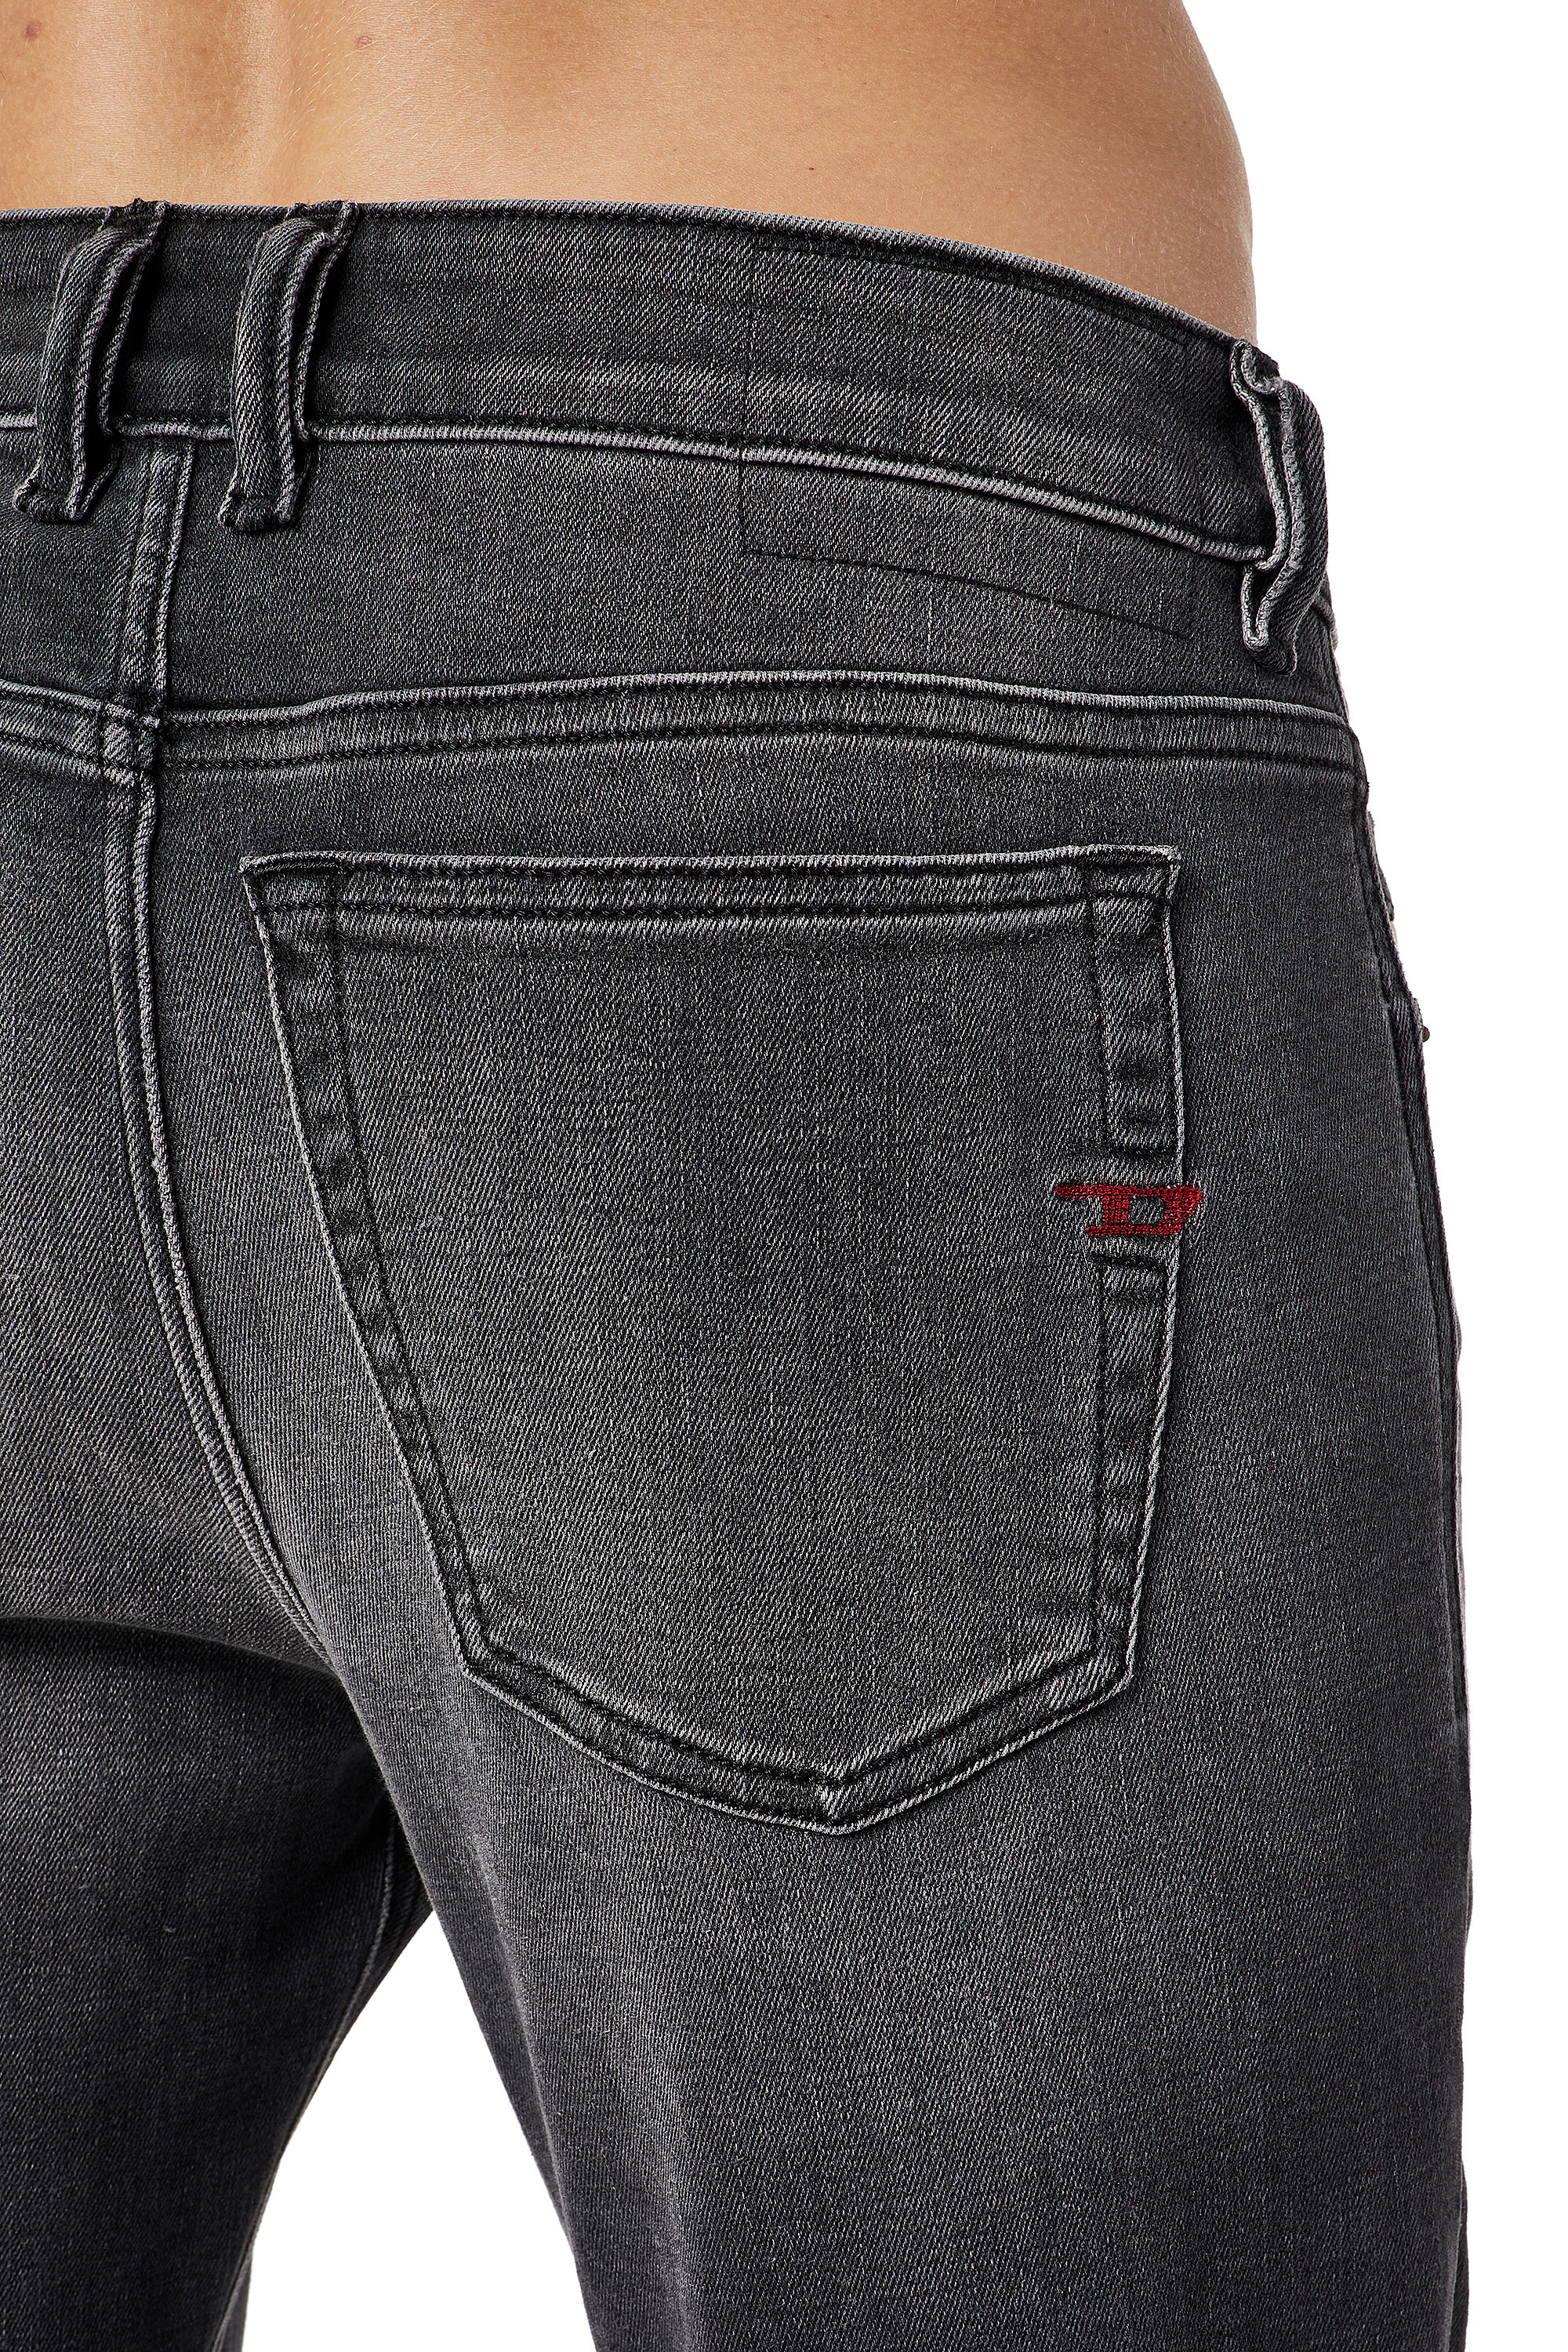 Super skinny fit jeans herren - Unser TOP-Favorit 